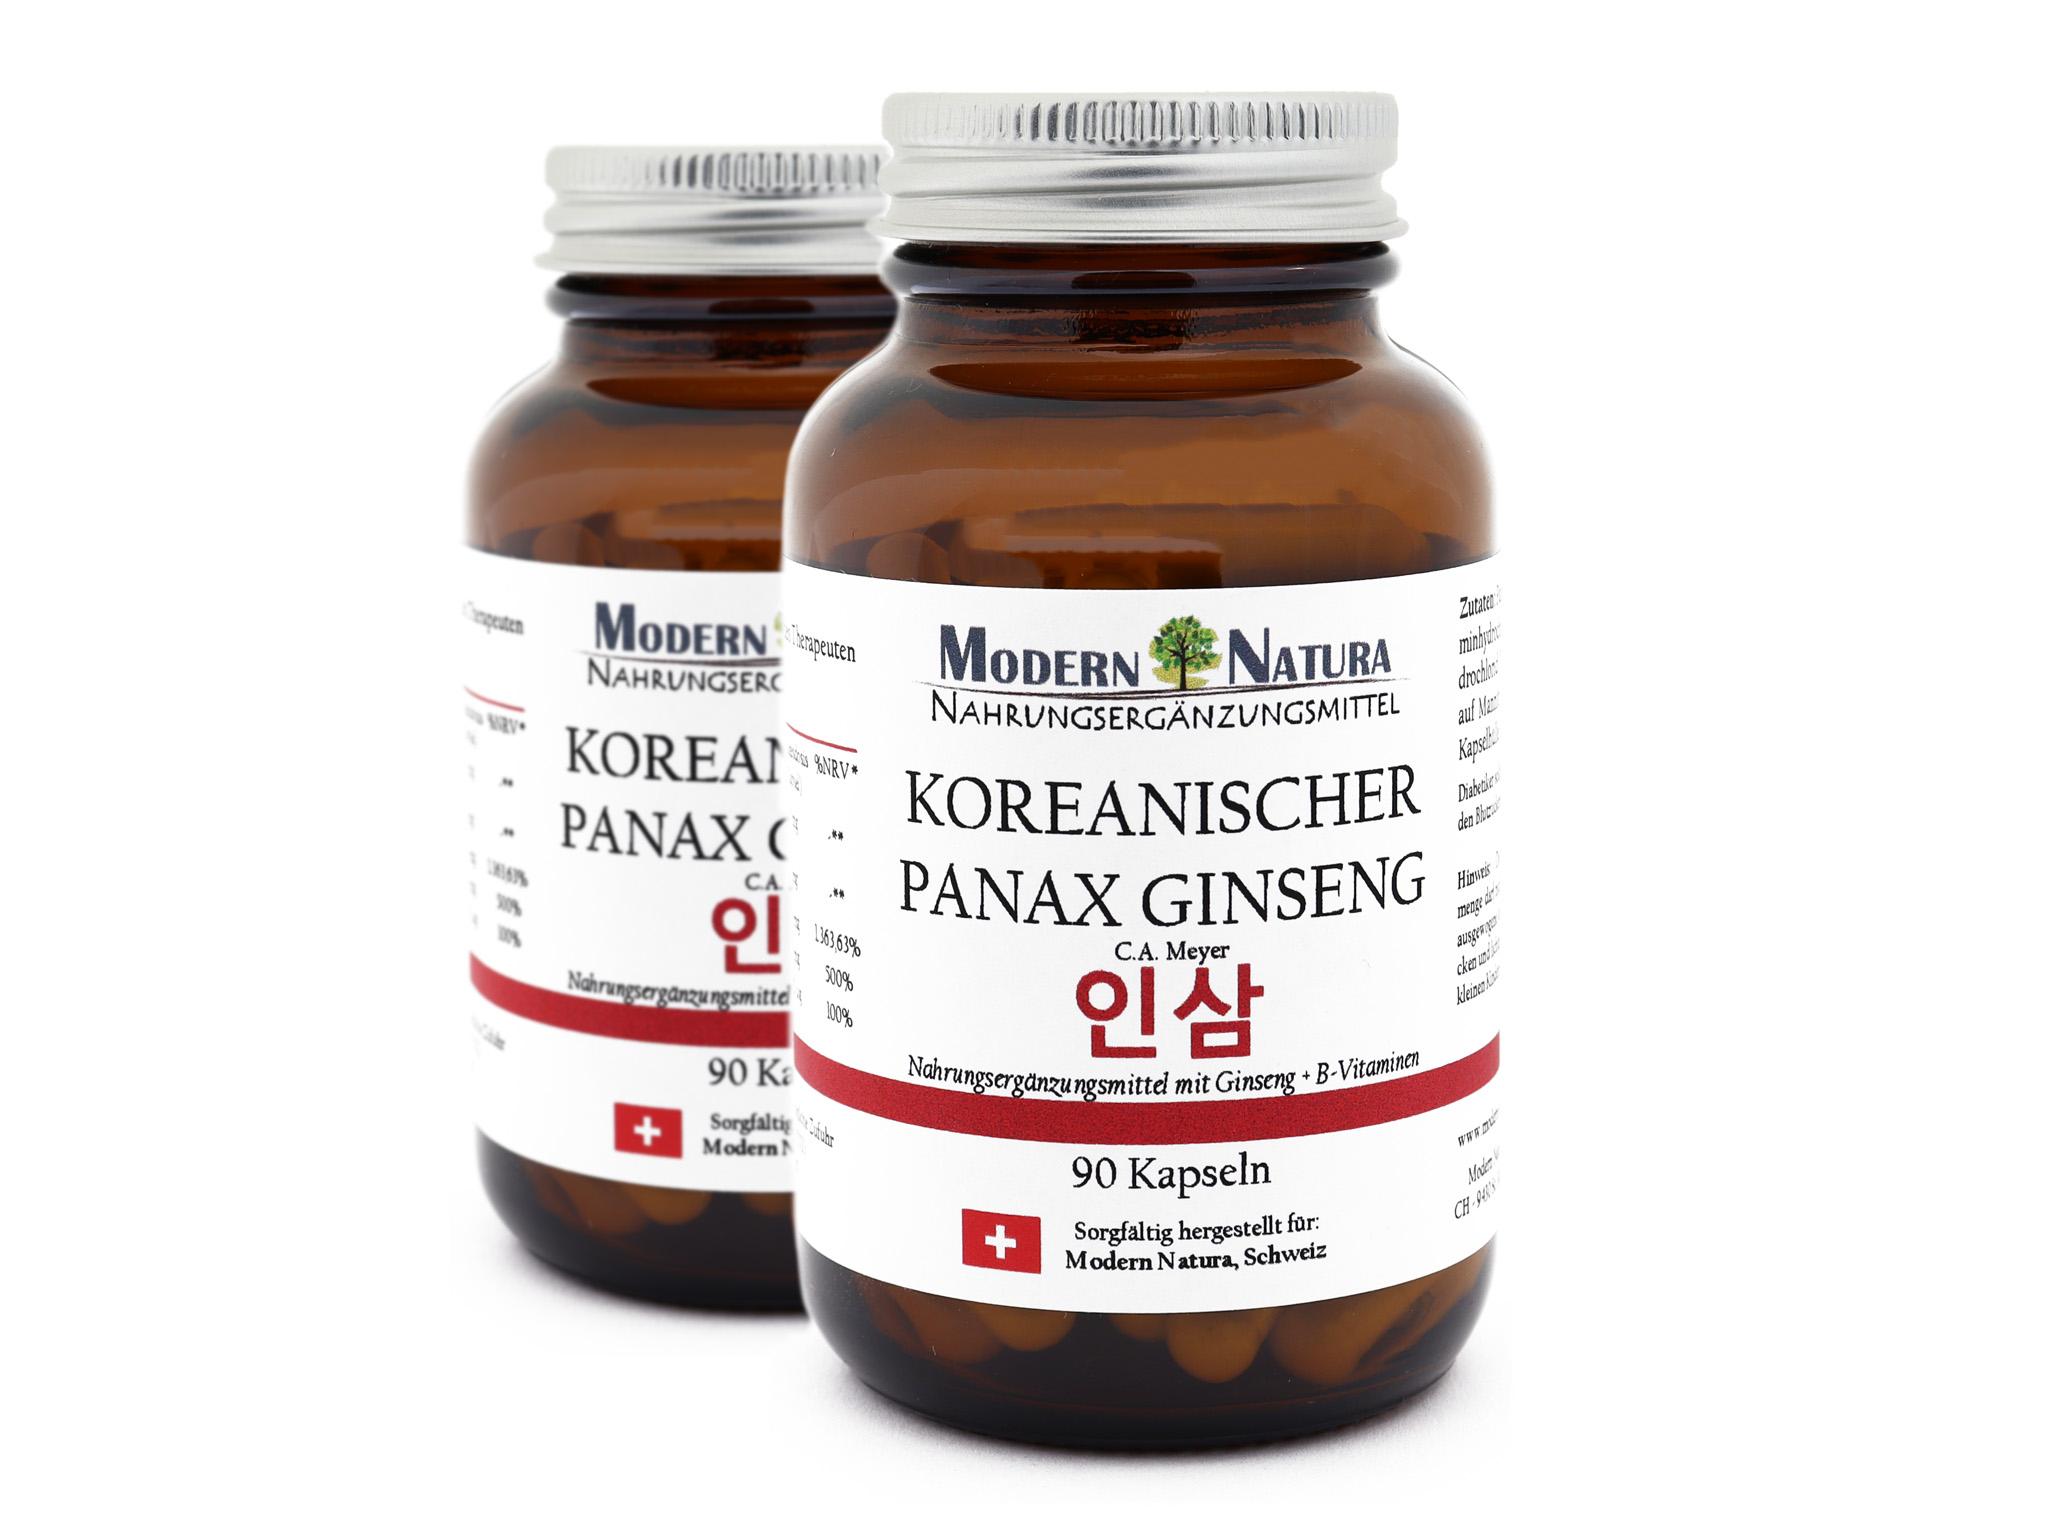 Koreanischer Panax Ginseng - Doppelpack (2x 90 Kapseln) Vegan & Glutenfrei - Ginsengextrakt mit B-Vitaminen (B1, B6 & B12) - Panax ginseng C. A. Meyer